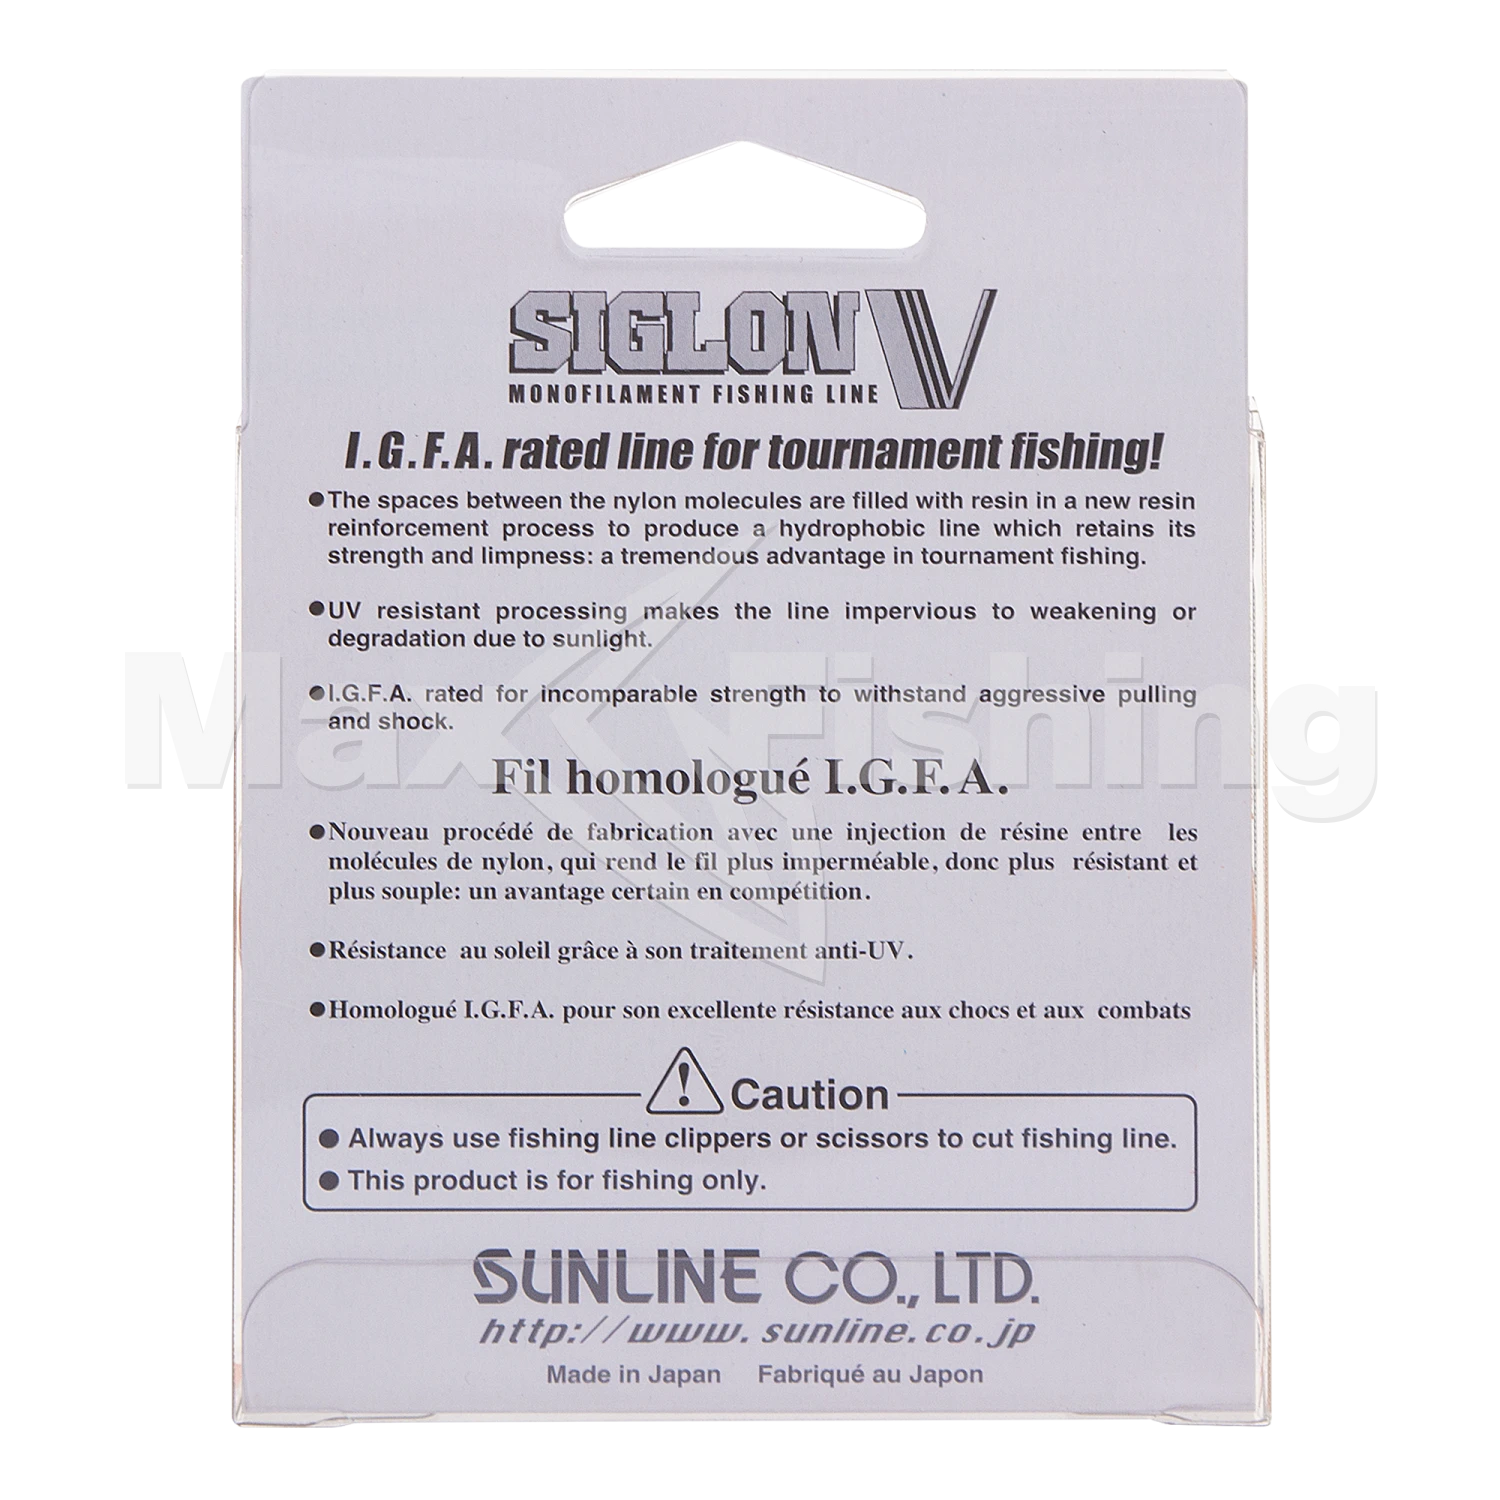 Леска монофильная Sunline Siglon V #3,0 0,285мм 100м (clear)